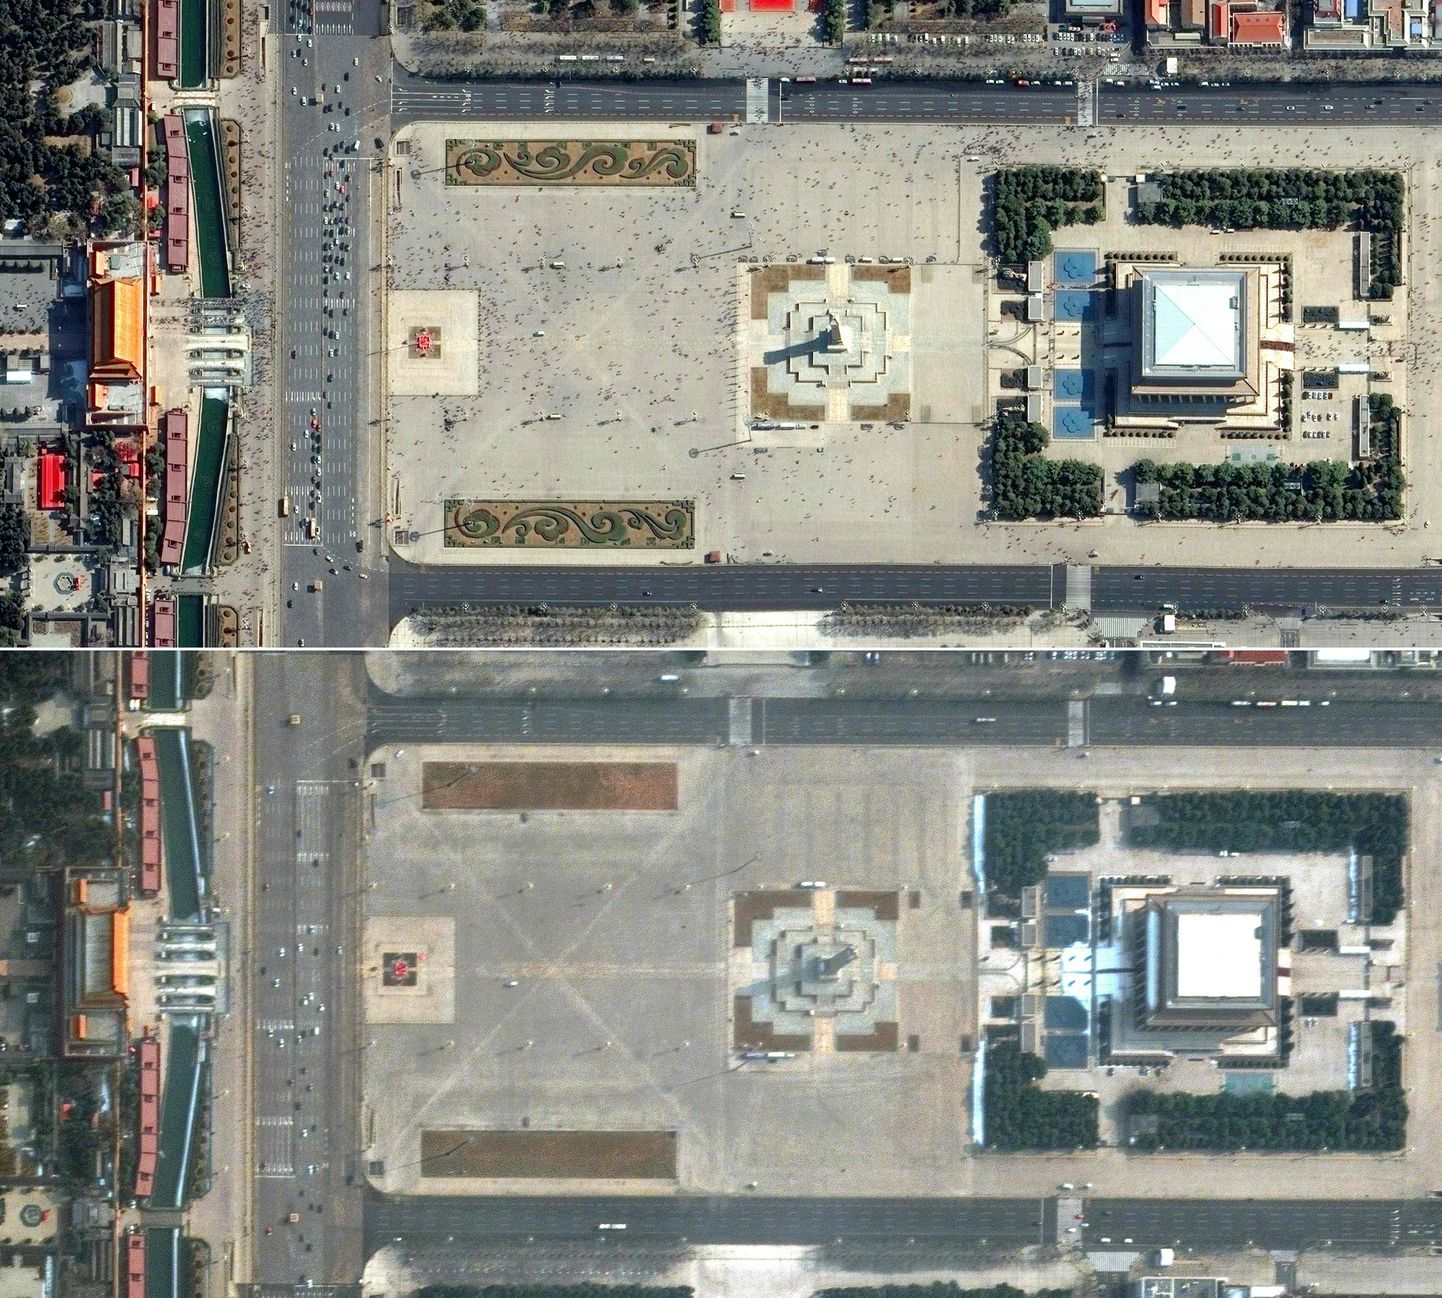 Hiina Pekingi Tianmeni väljak enne (üleval) ja pärast koroonaviiruse puhkemist